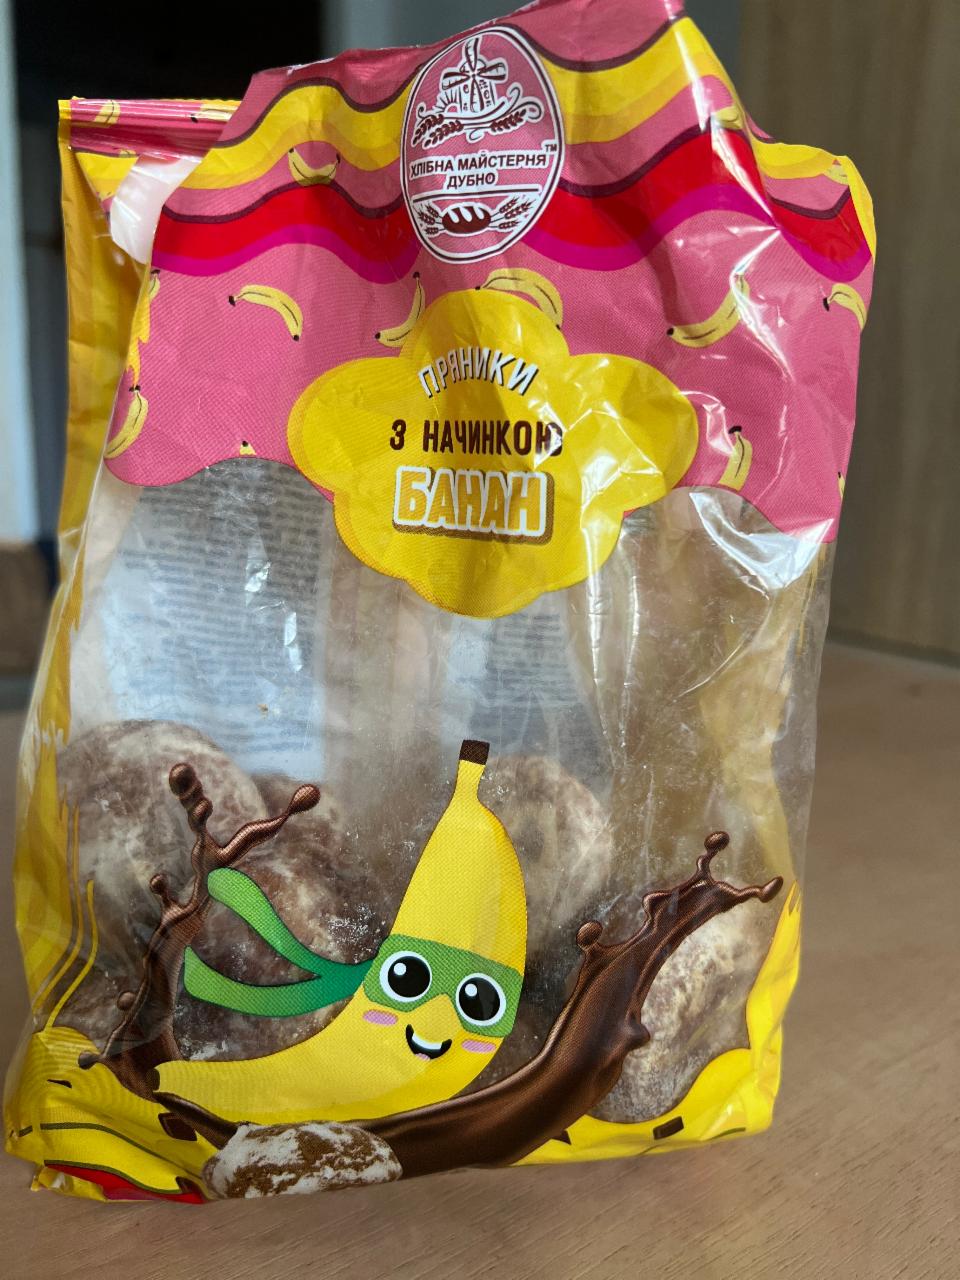 Фото - Пряники з начинкою банан Хлібна майстерня Дубно